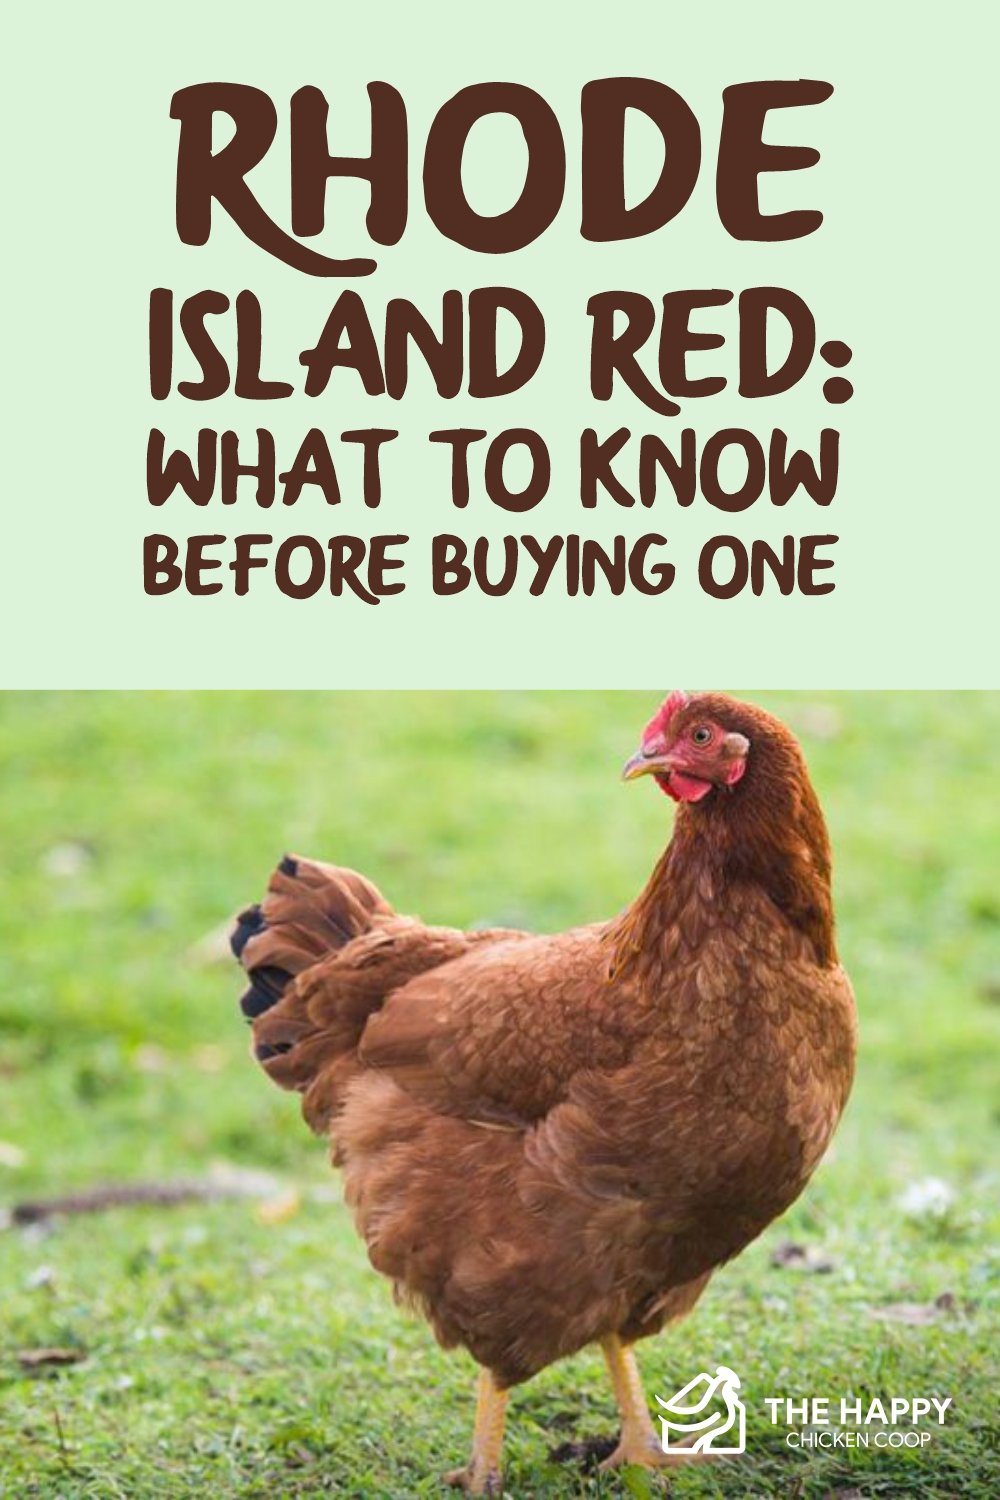 罗德岛红色-购买之前要知道什么